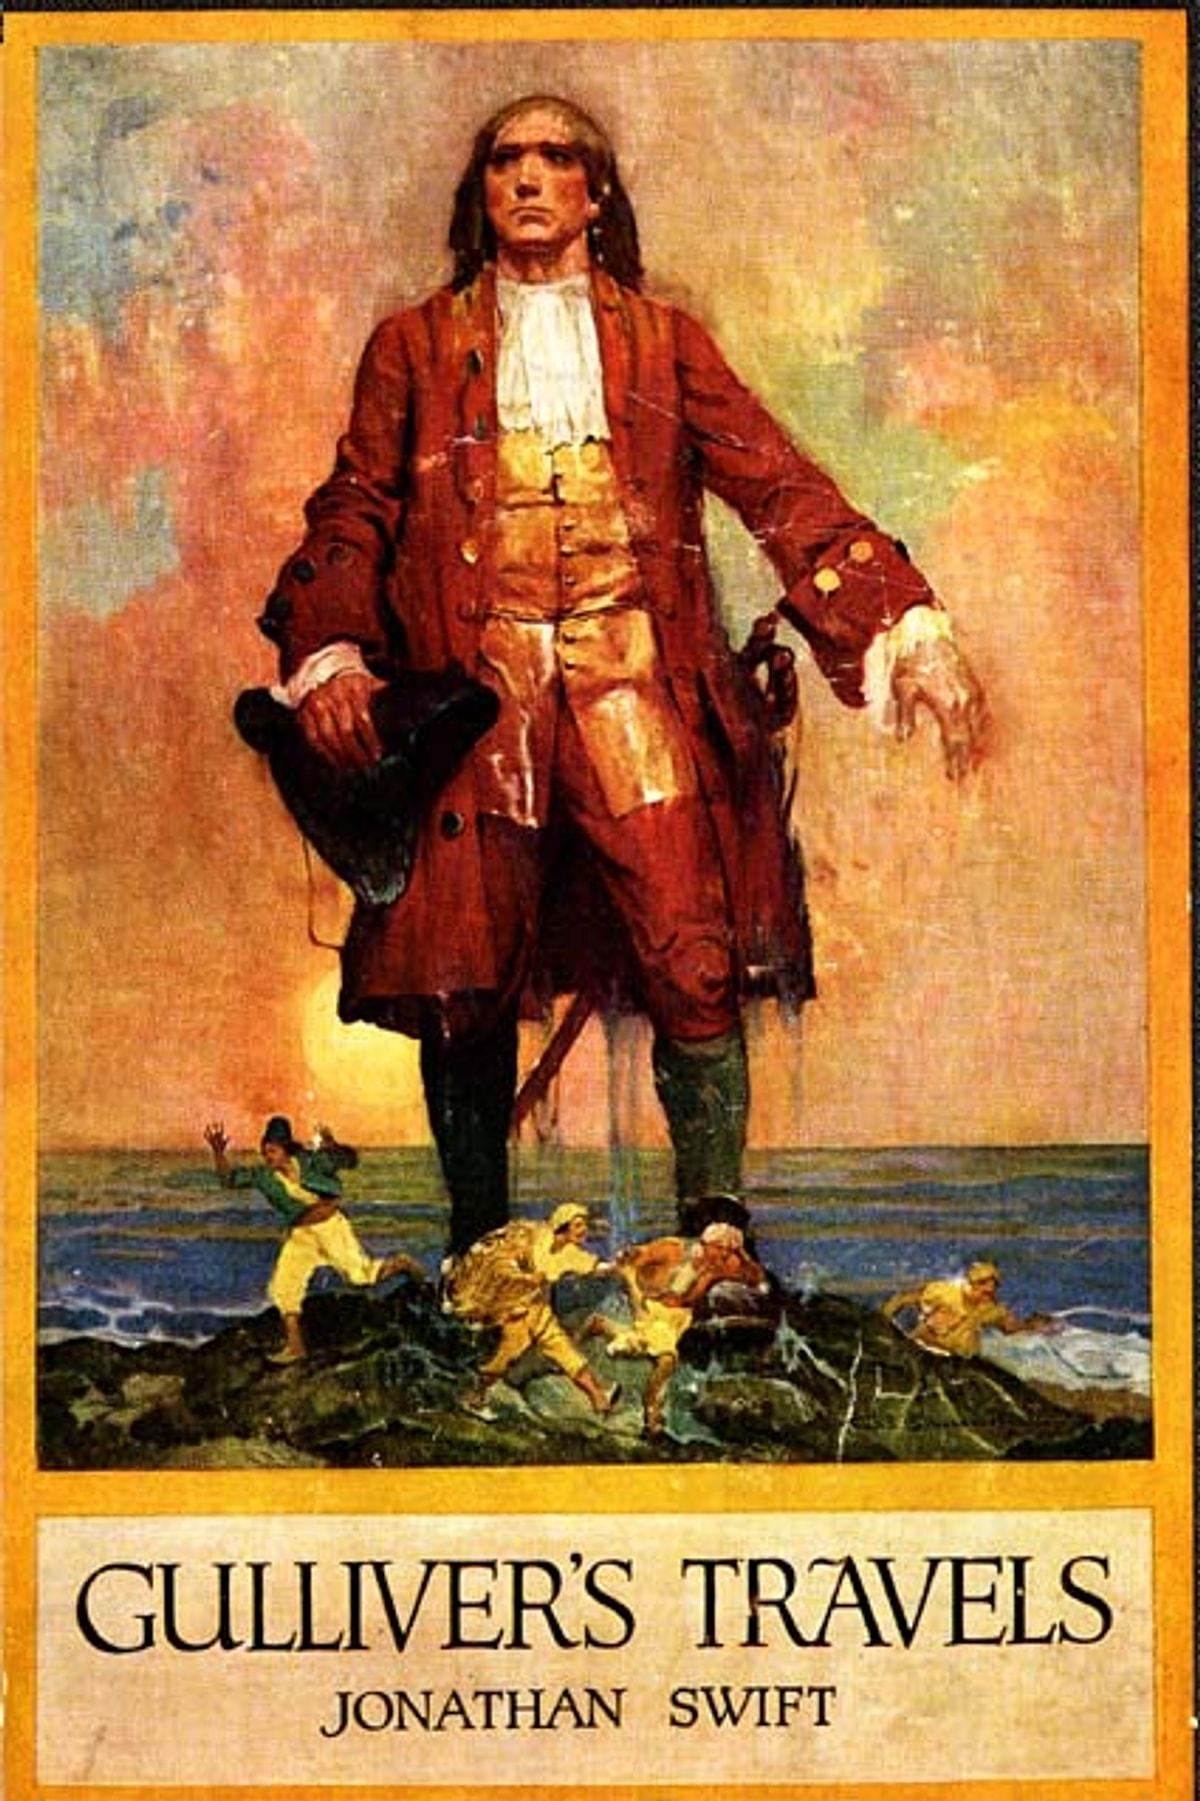 Свифт приключения. Джонатан Свифт путешествия Гулливера. Джонатан Свифт Gulliver's Travels 1726. Jonathan Swift Gulliver's Travels обложка.